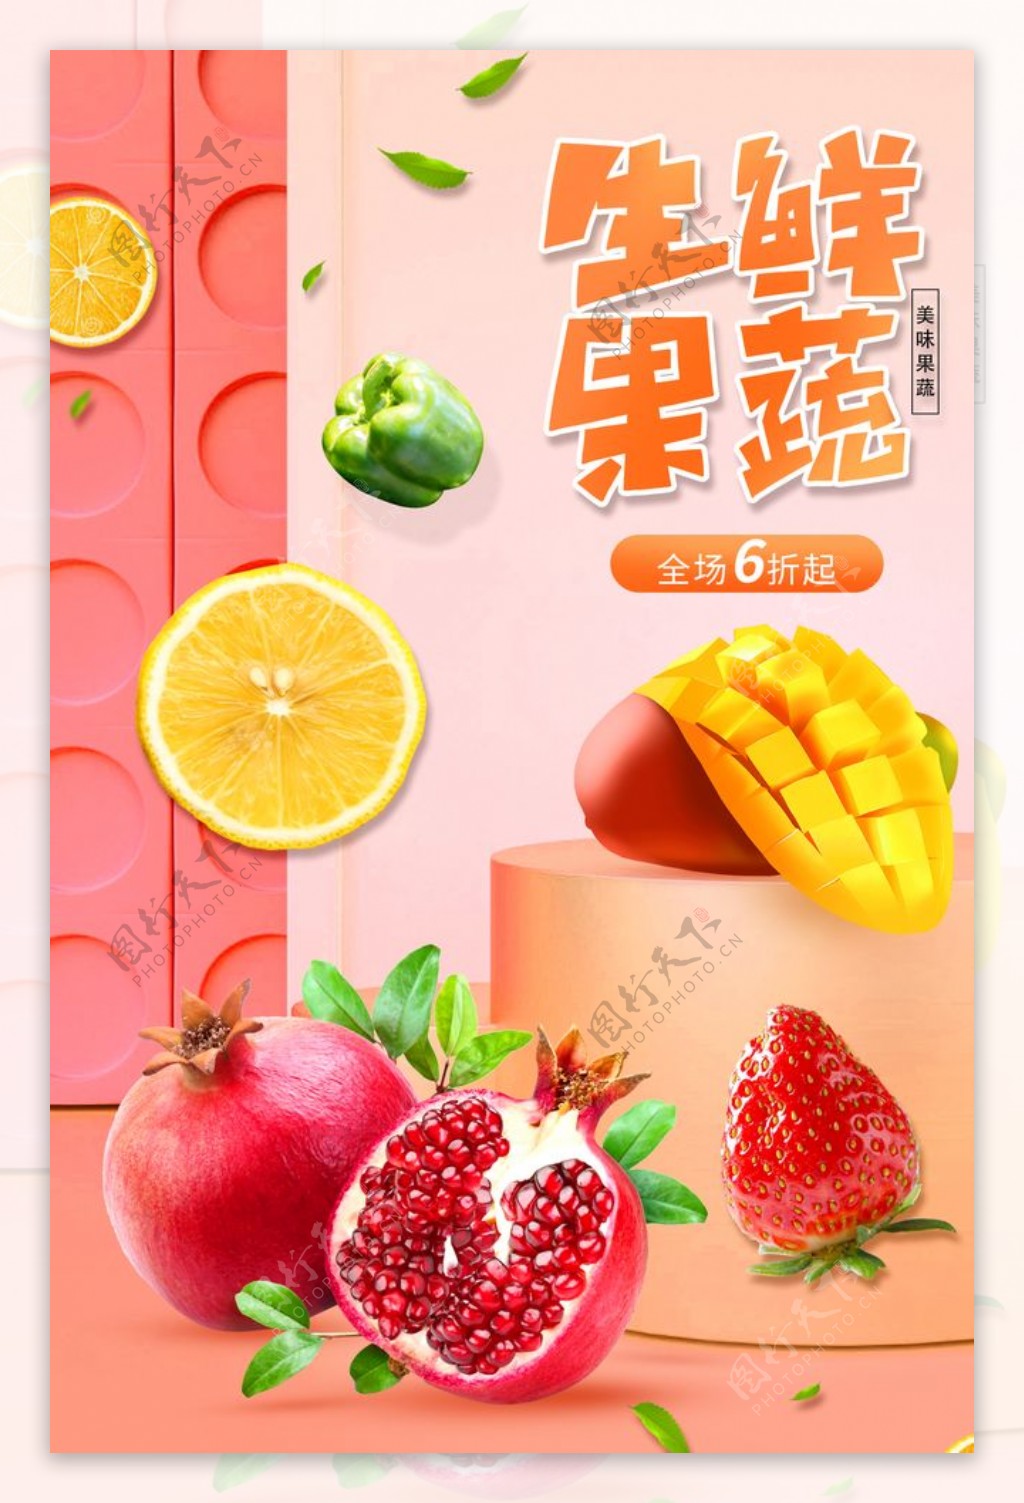 生鲜果蔬超市活动宣传海报素材图片